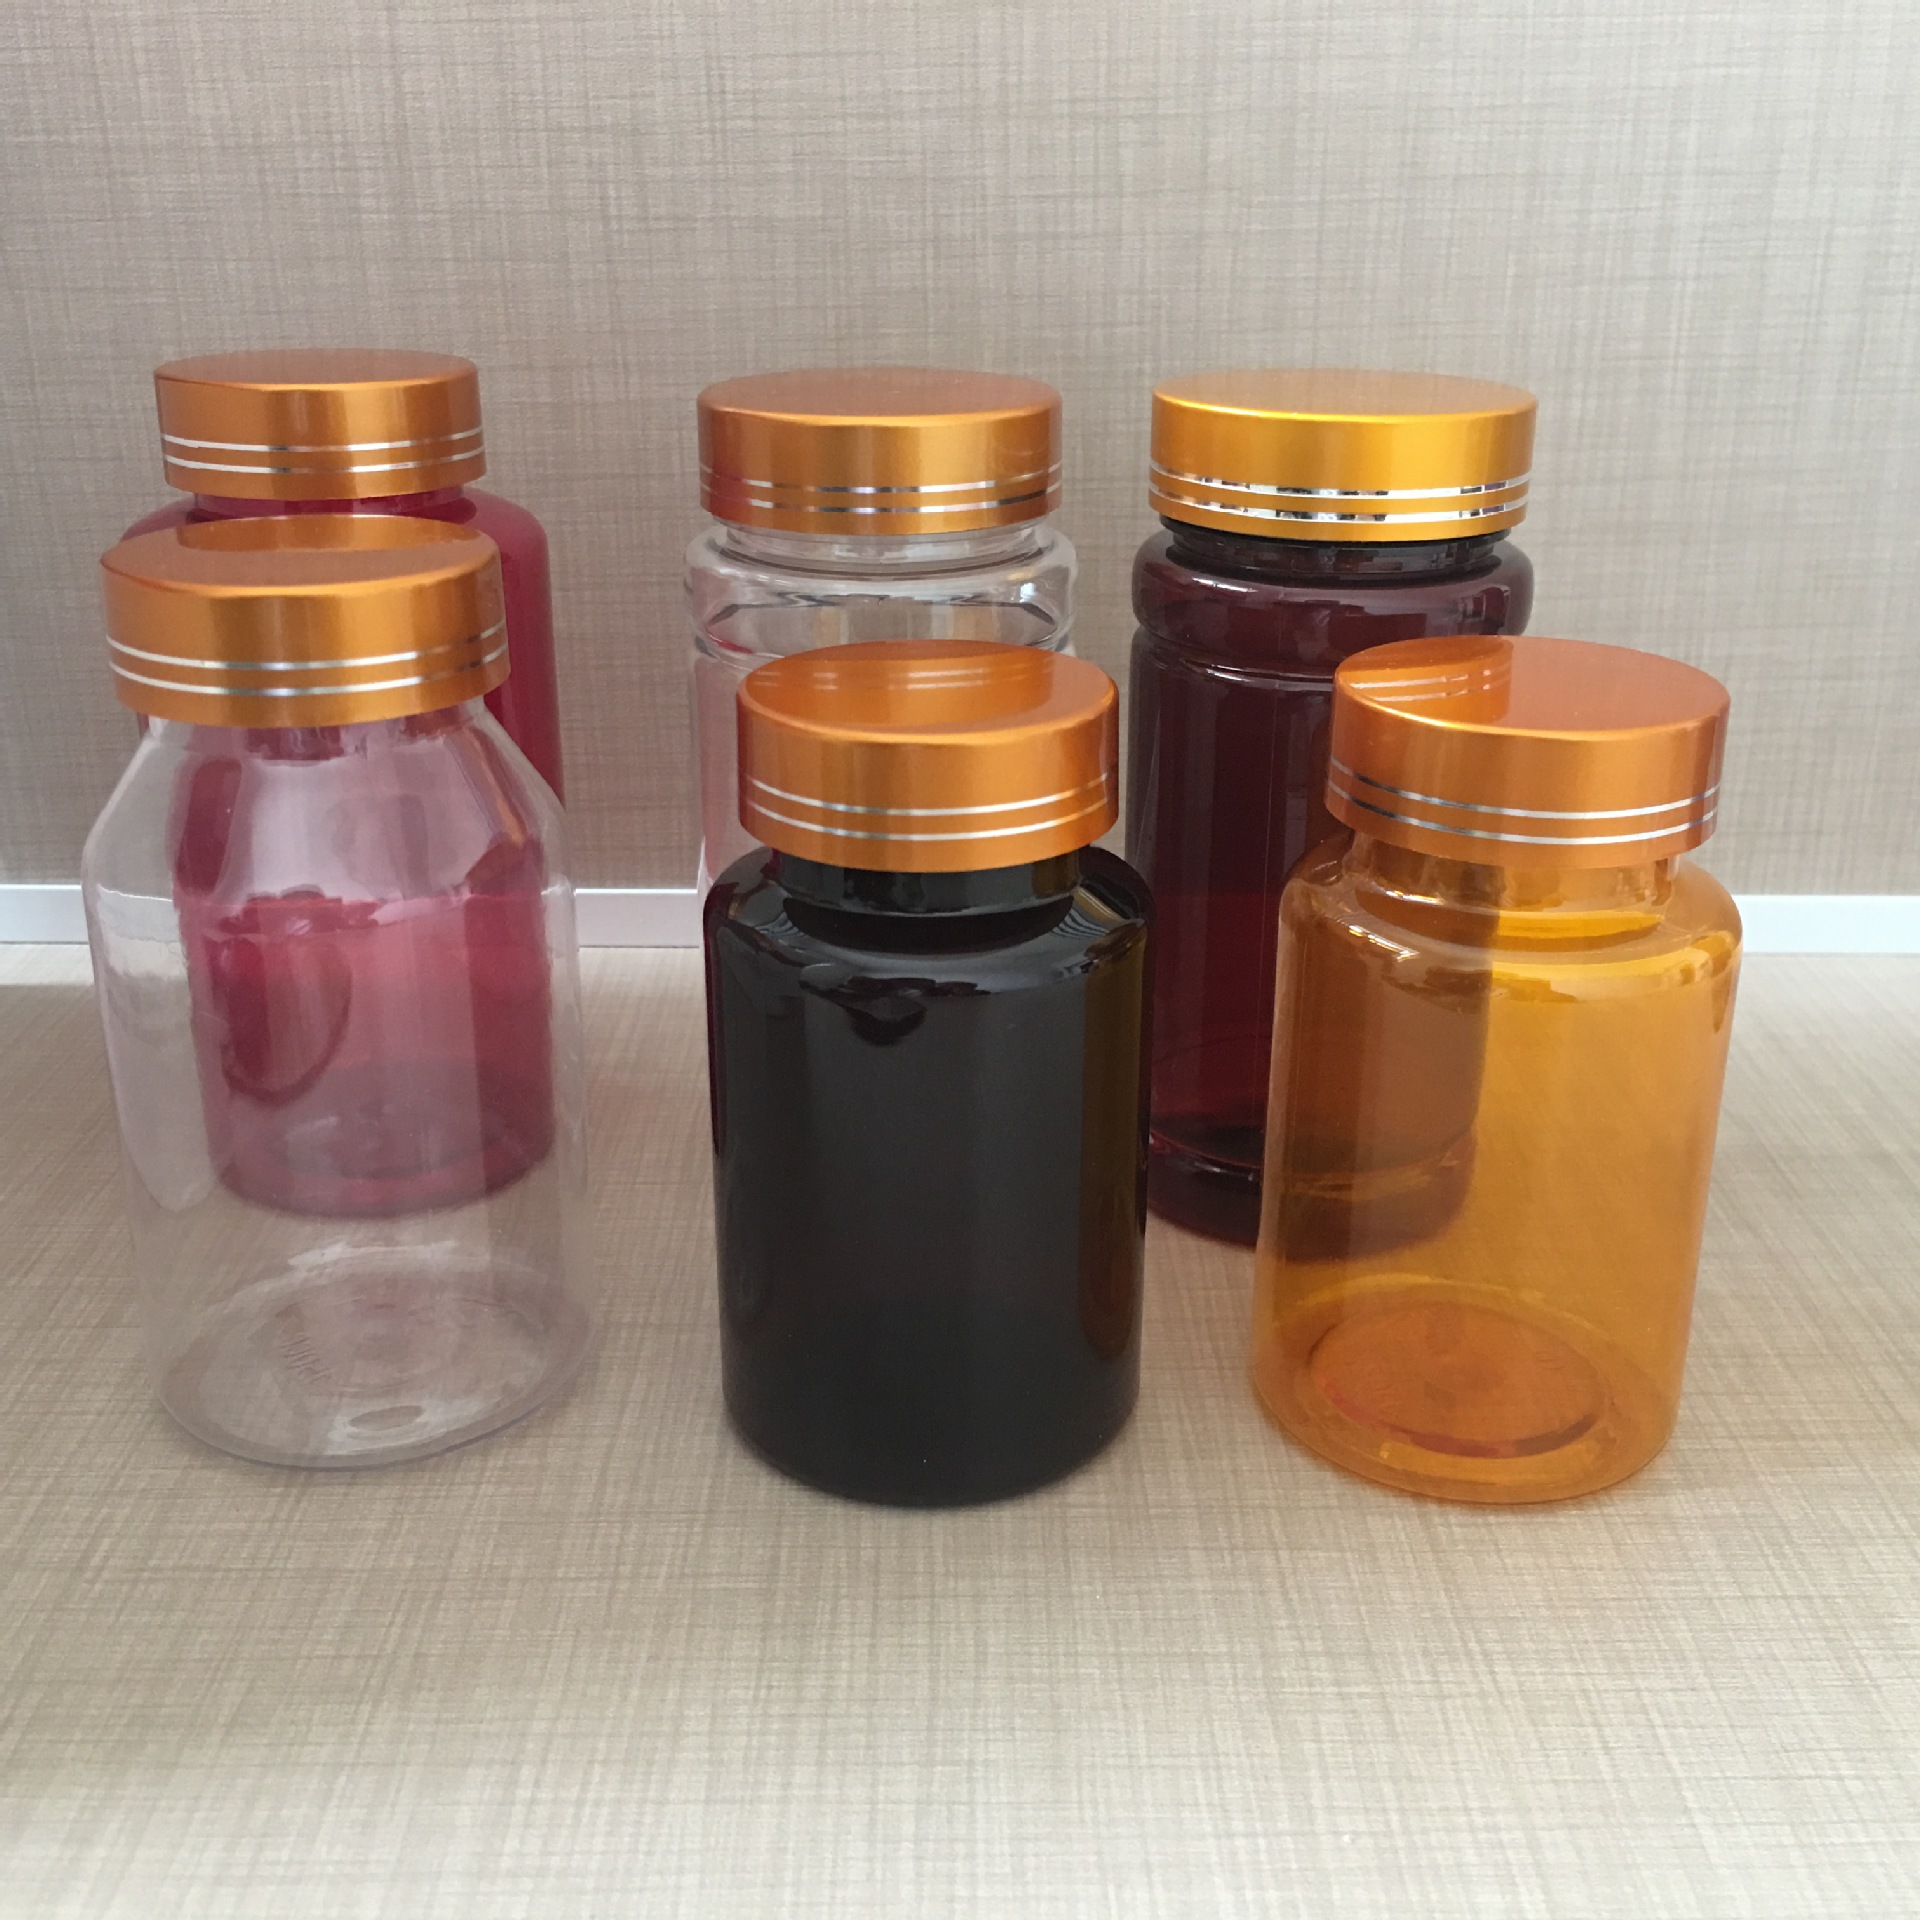 口服液体药用塑料瓶60ml塑料瓶外用塑料瓶示例图11